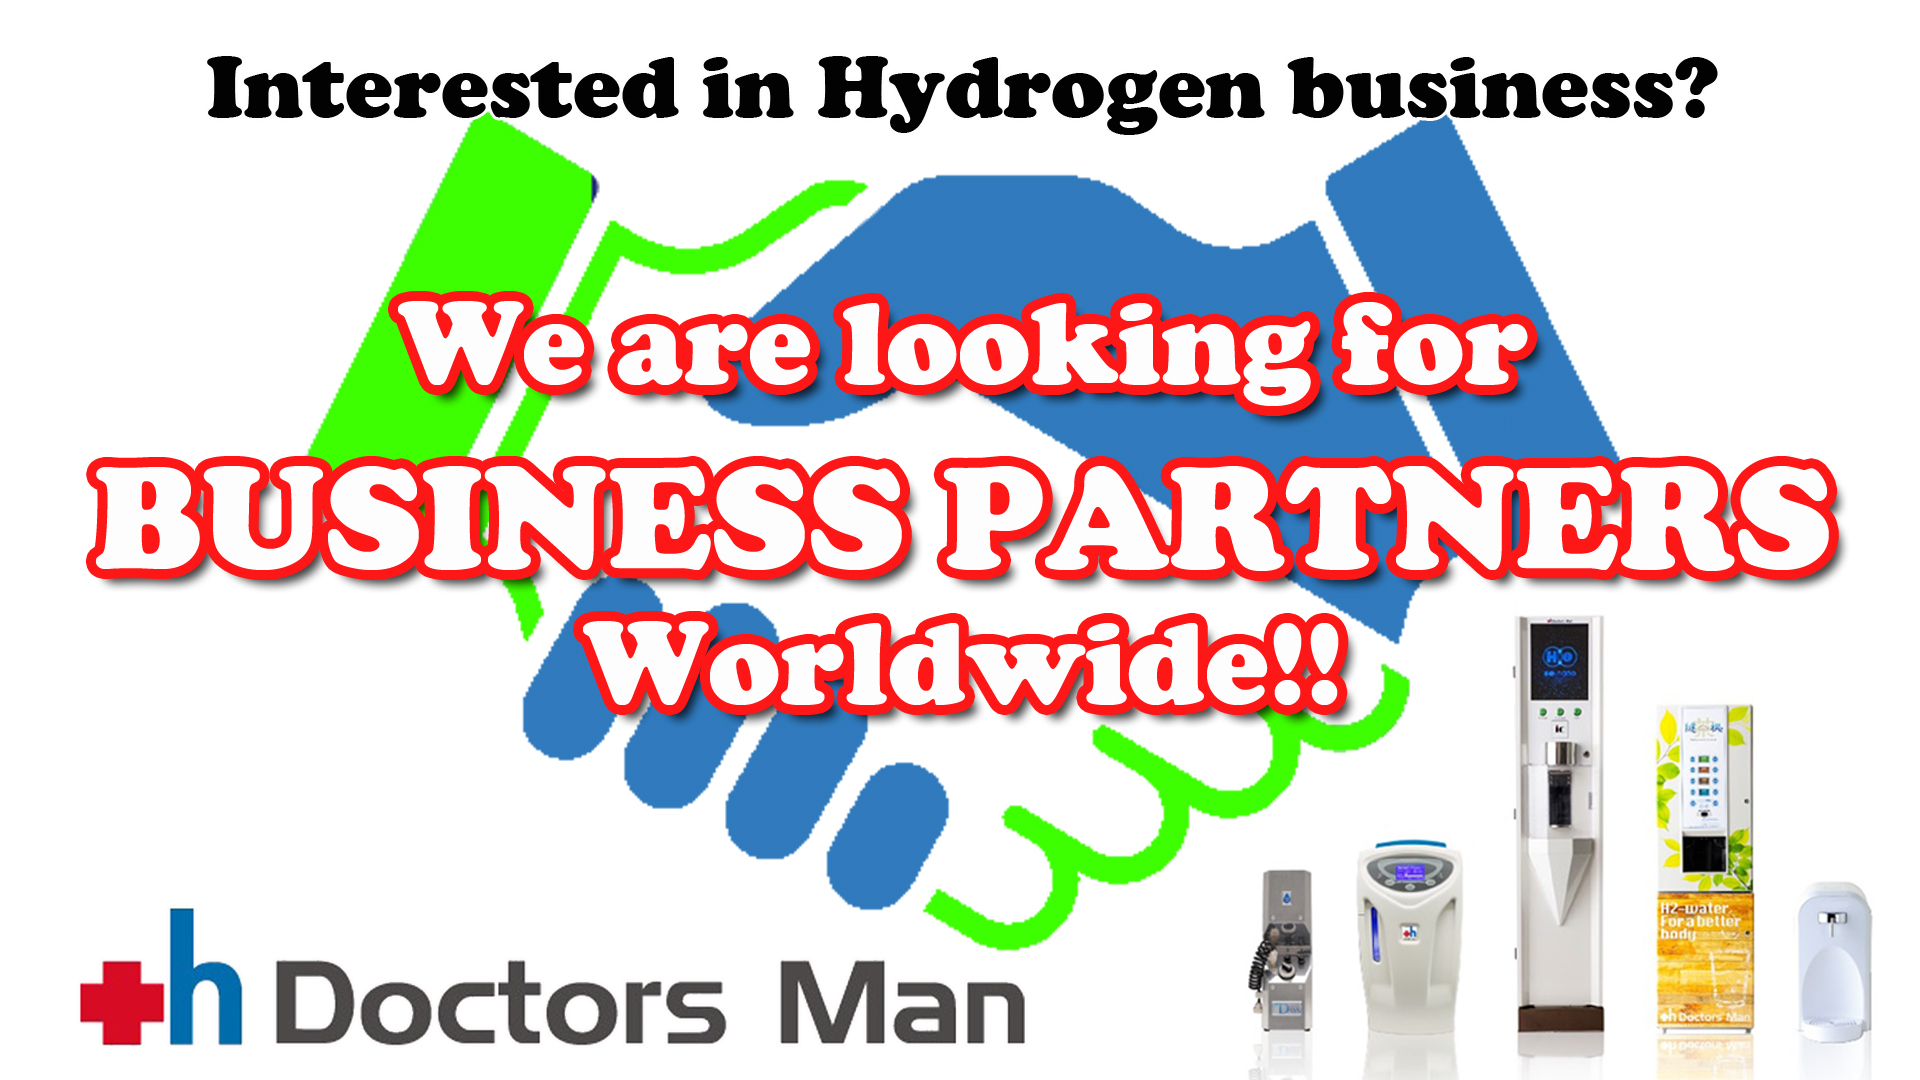 Advertisement - Doctors Man looking for distributors worldwide in partnership